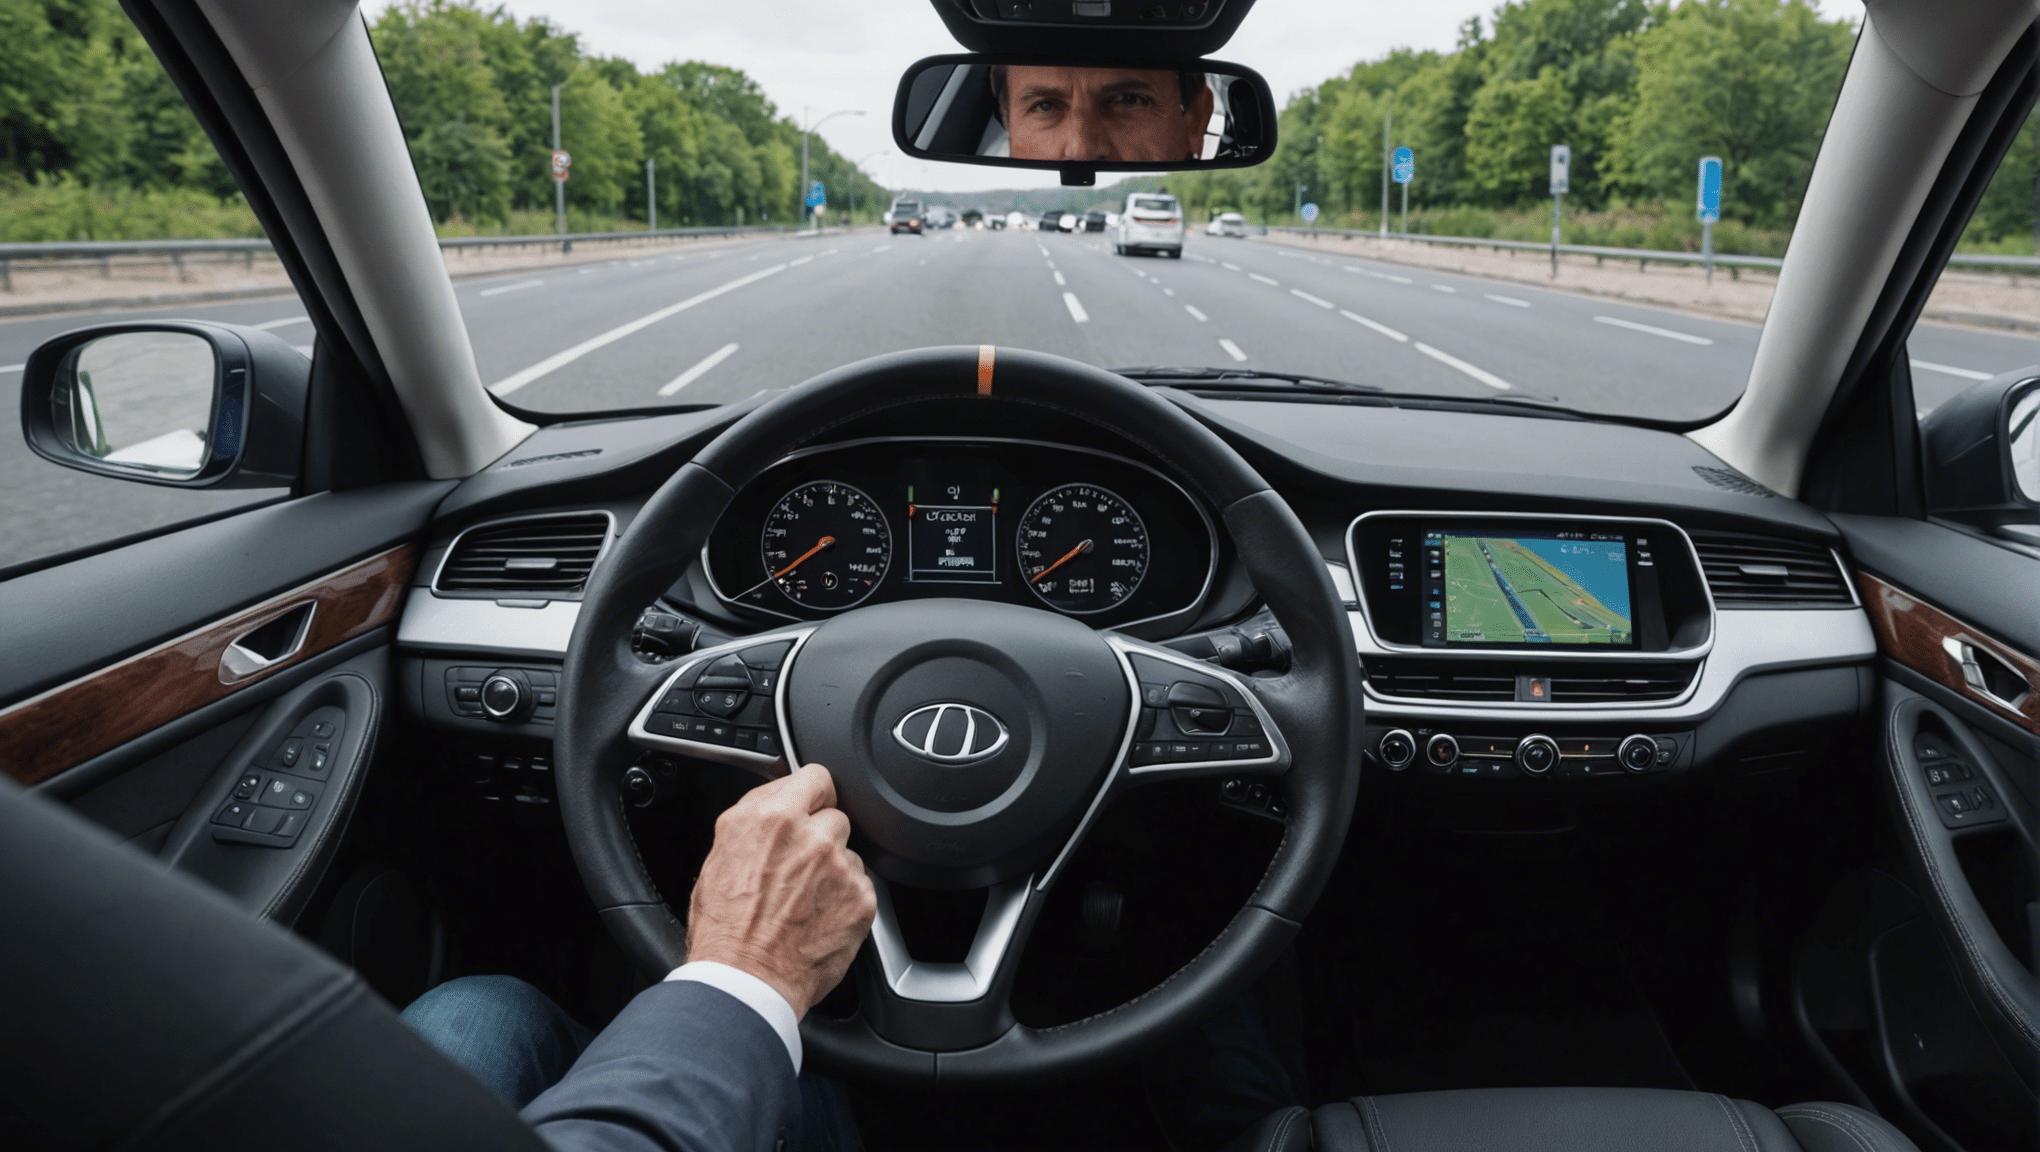 découvrez l'évolution des interfaces conducteur dans le domaine automobile et ses implications sur la conduite et l'expérience utilisateur.